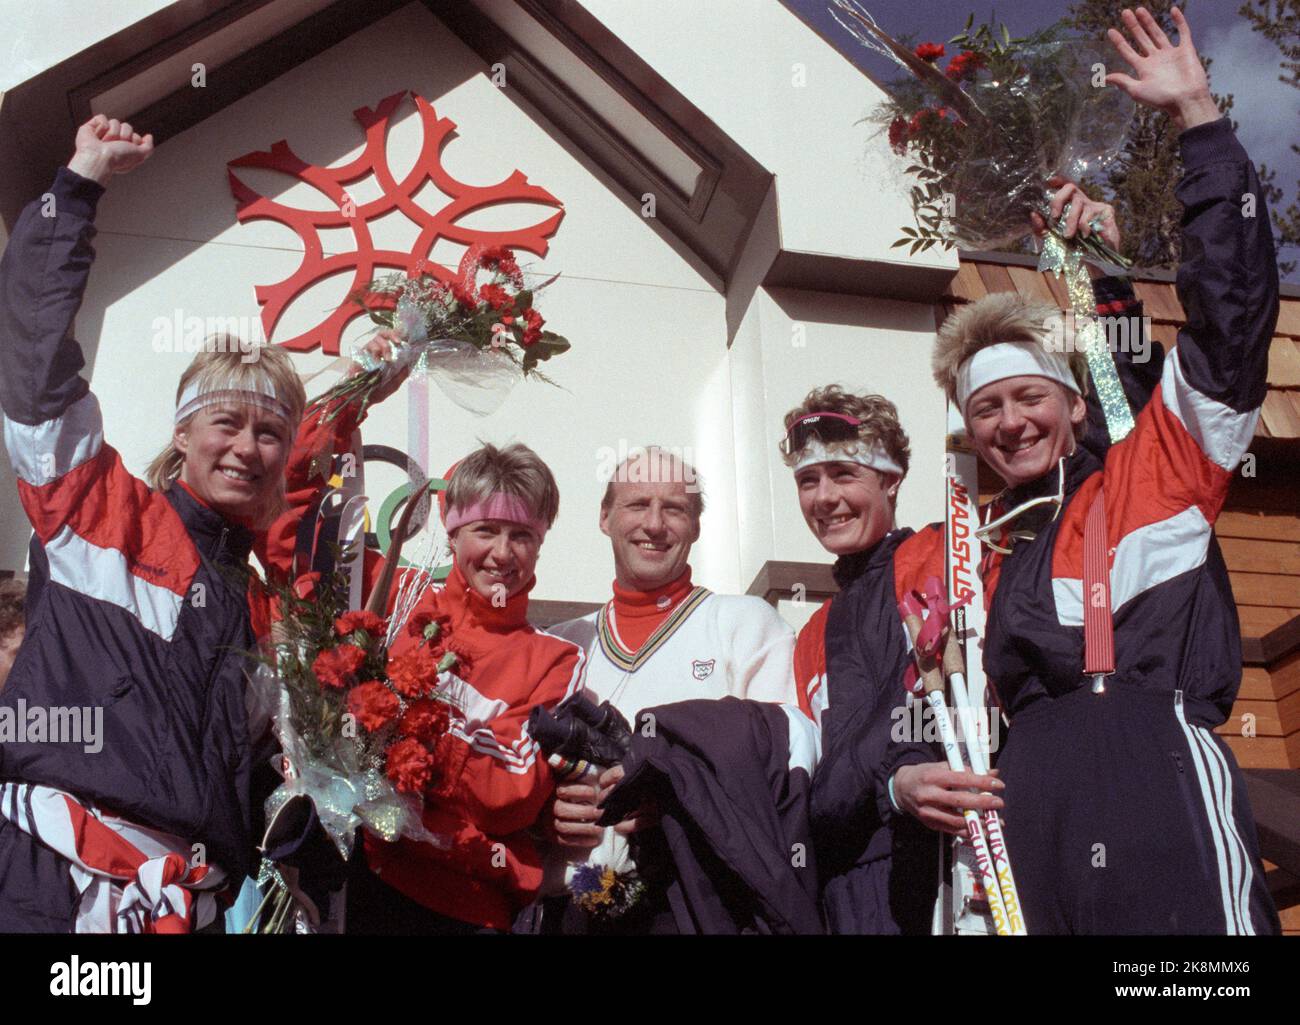 Calgary, Kanada 198802: Olympic Calgary 1988. Skilanglauf, Staffel, Frauen. Das norwegische Team holt Silber. Hier Kronprinz Harald unter den glücklichen silbernen Mädchen (f Foto: Bjørn Sigurdsøn. Stockfoto